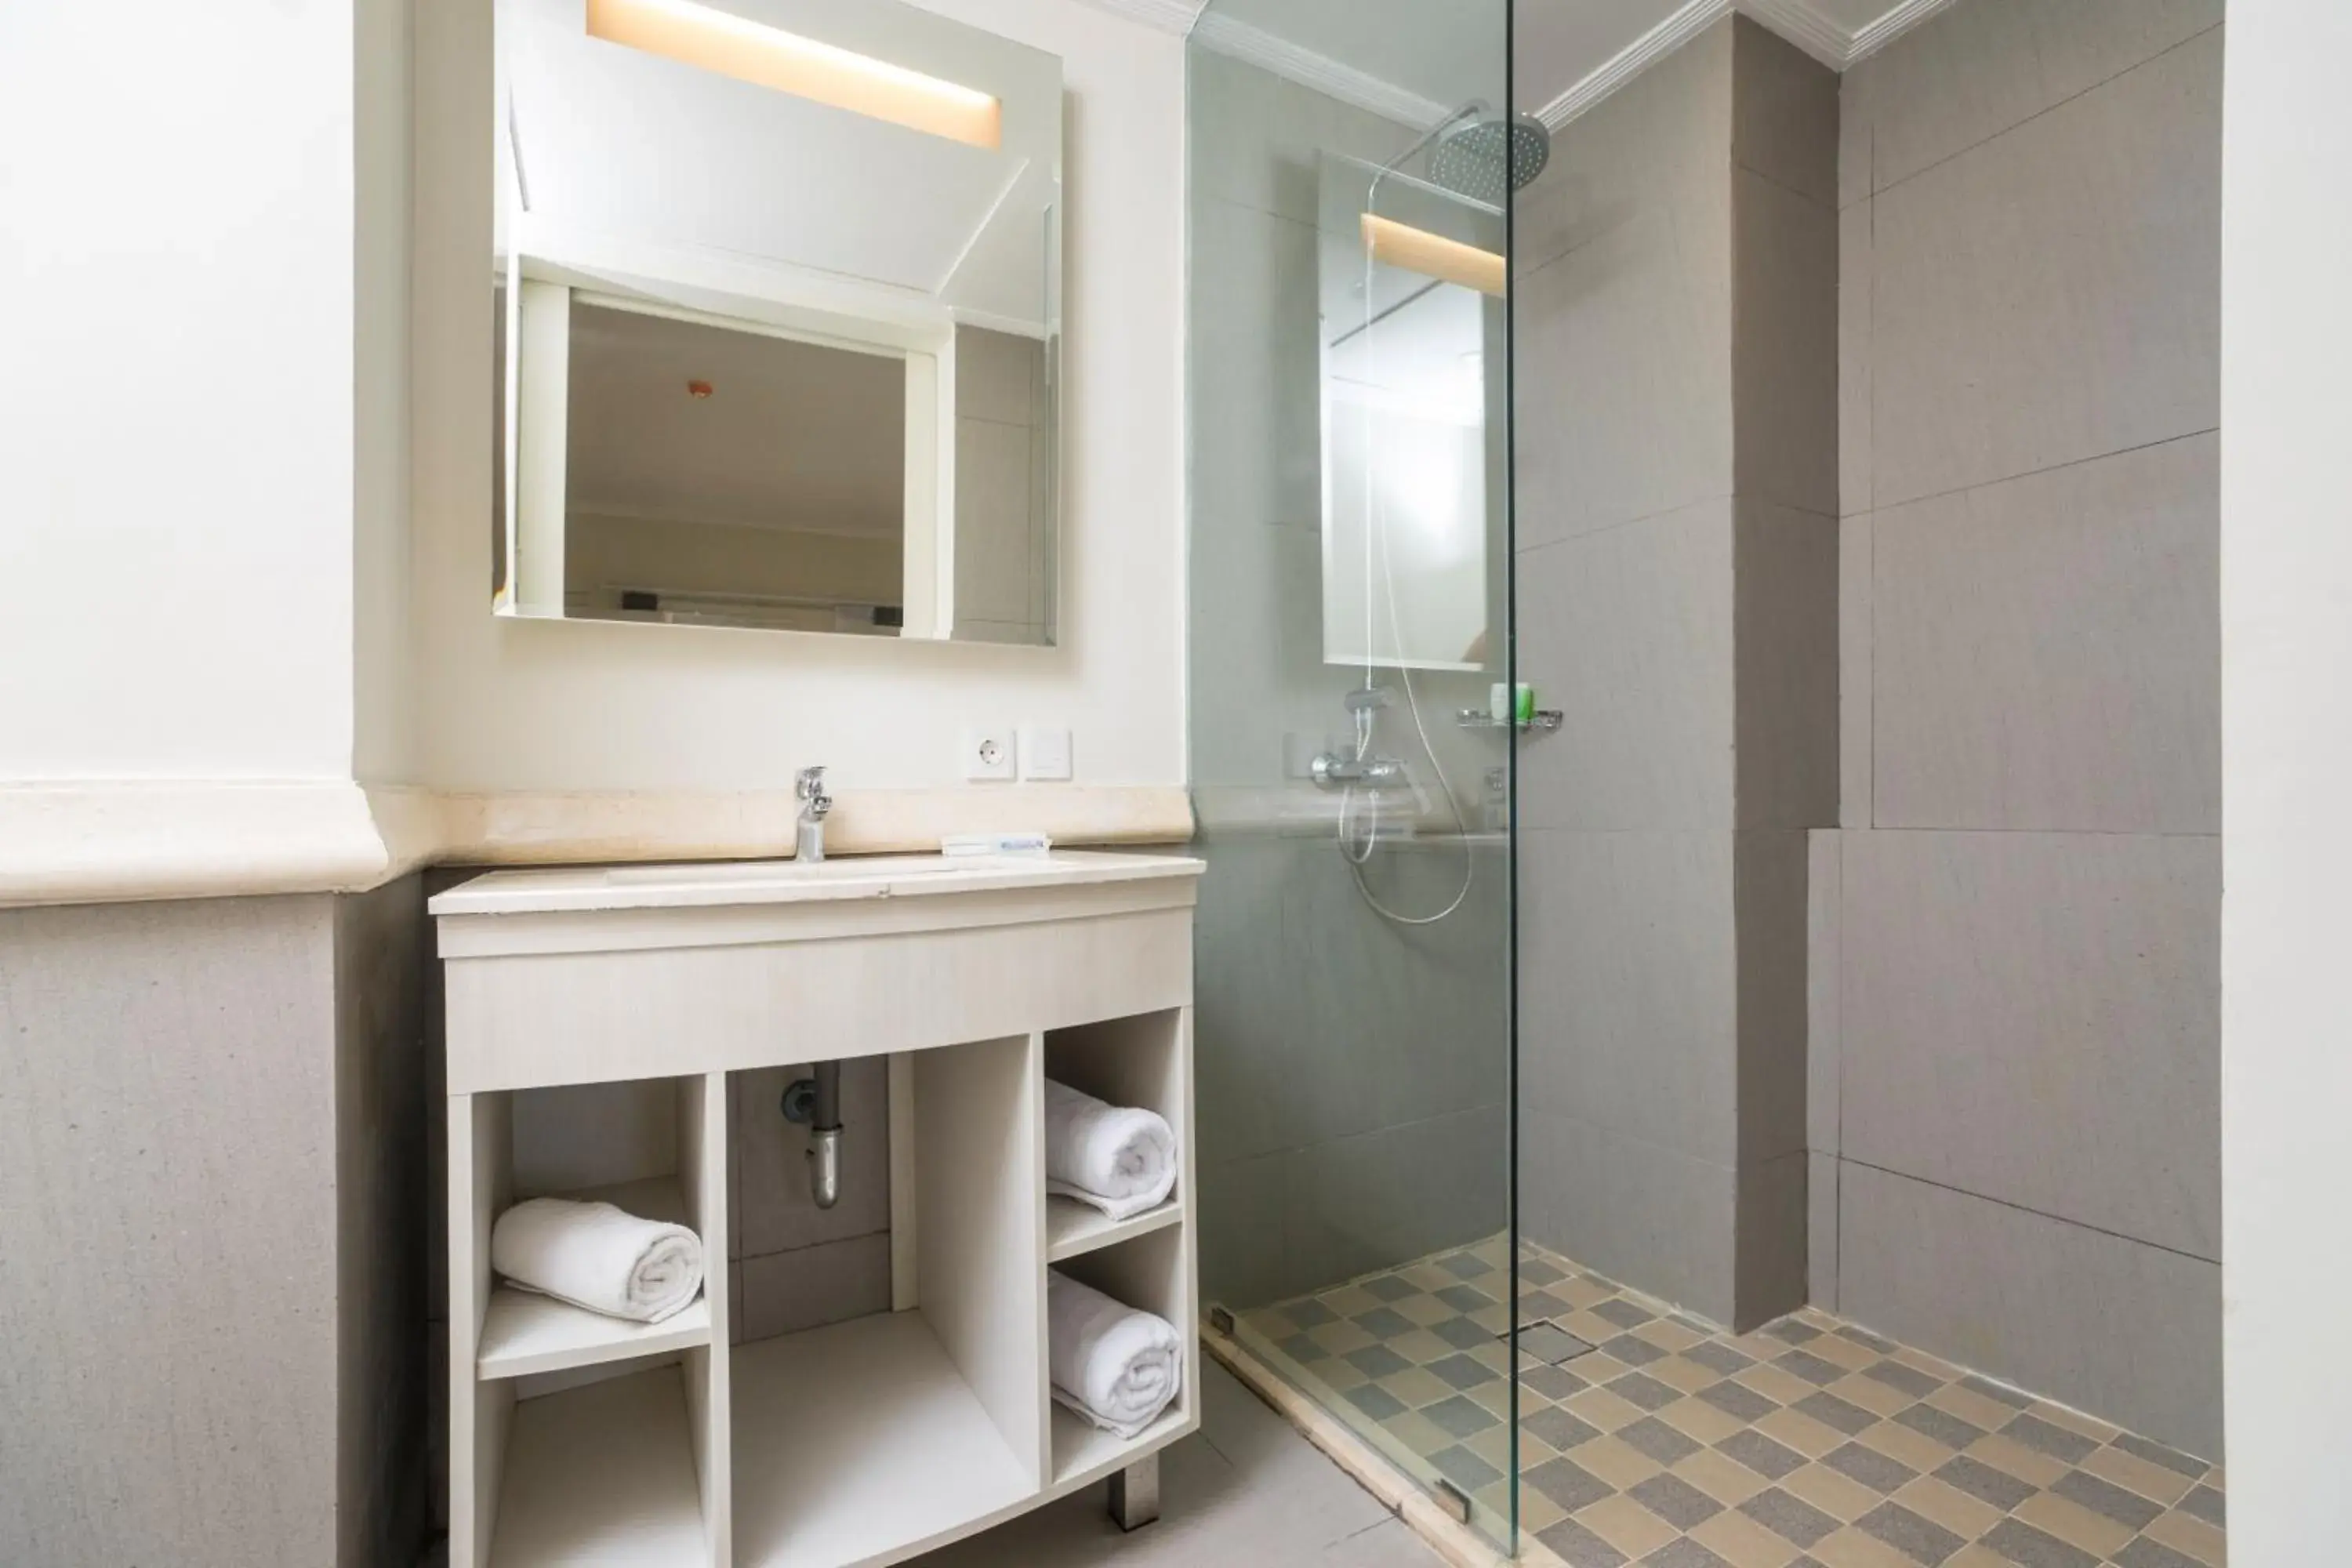 Shower, Bathroom in Alron Hotel Kuta Powered by Archipelago